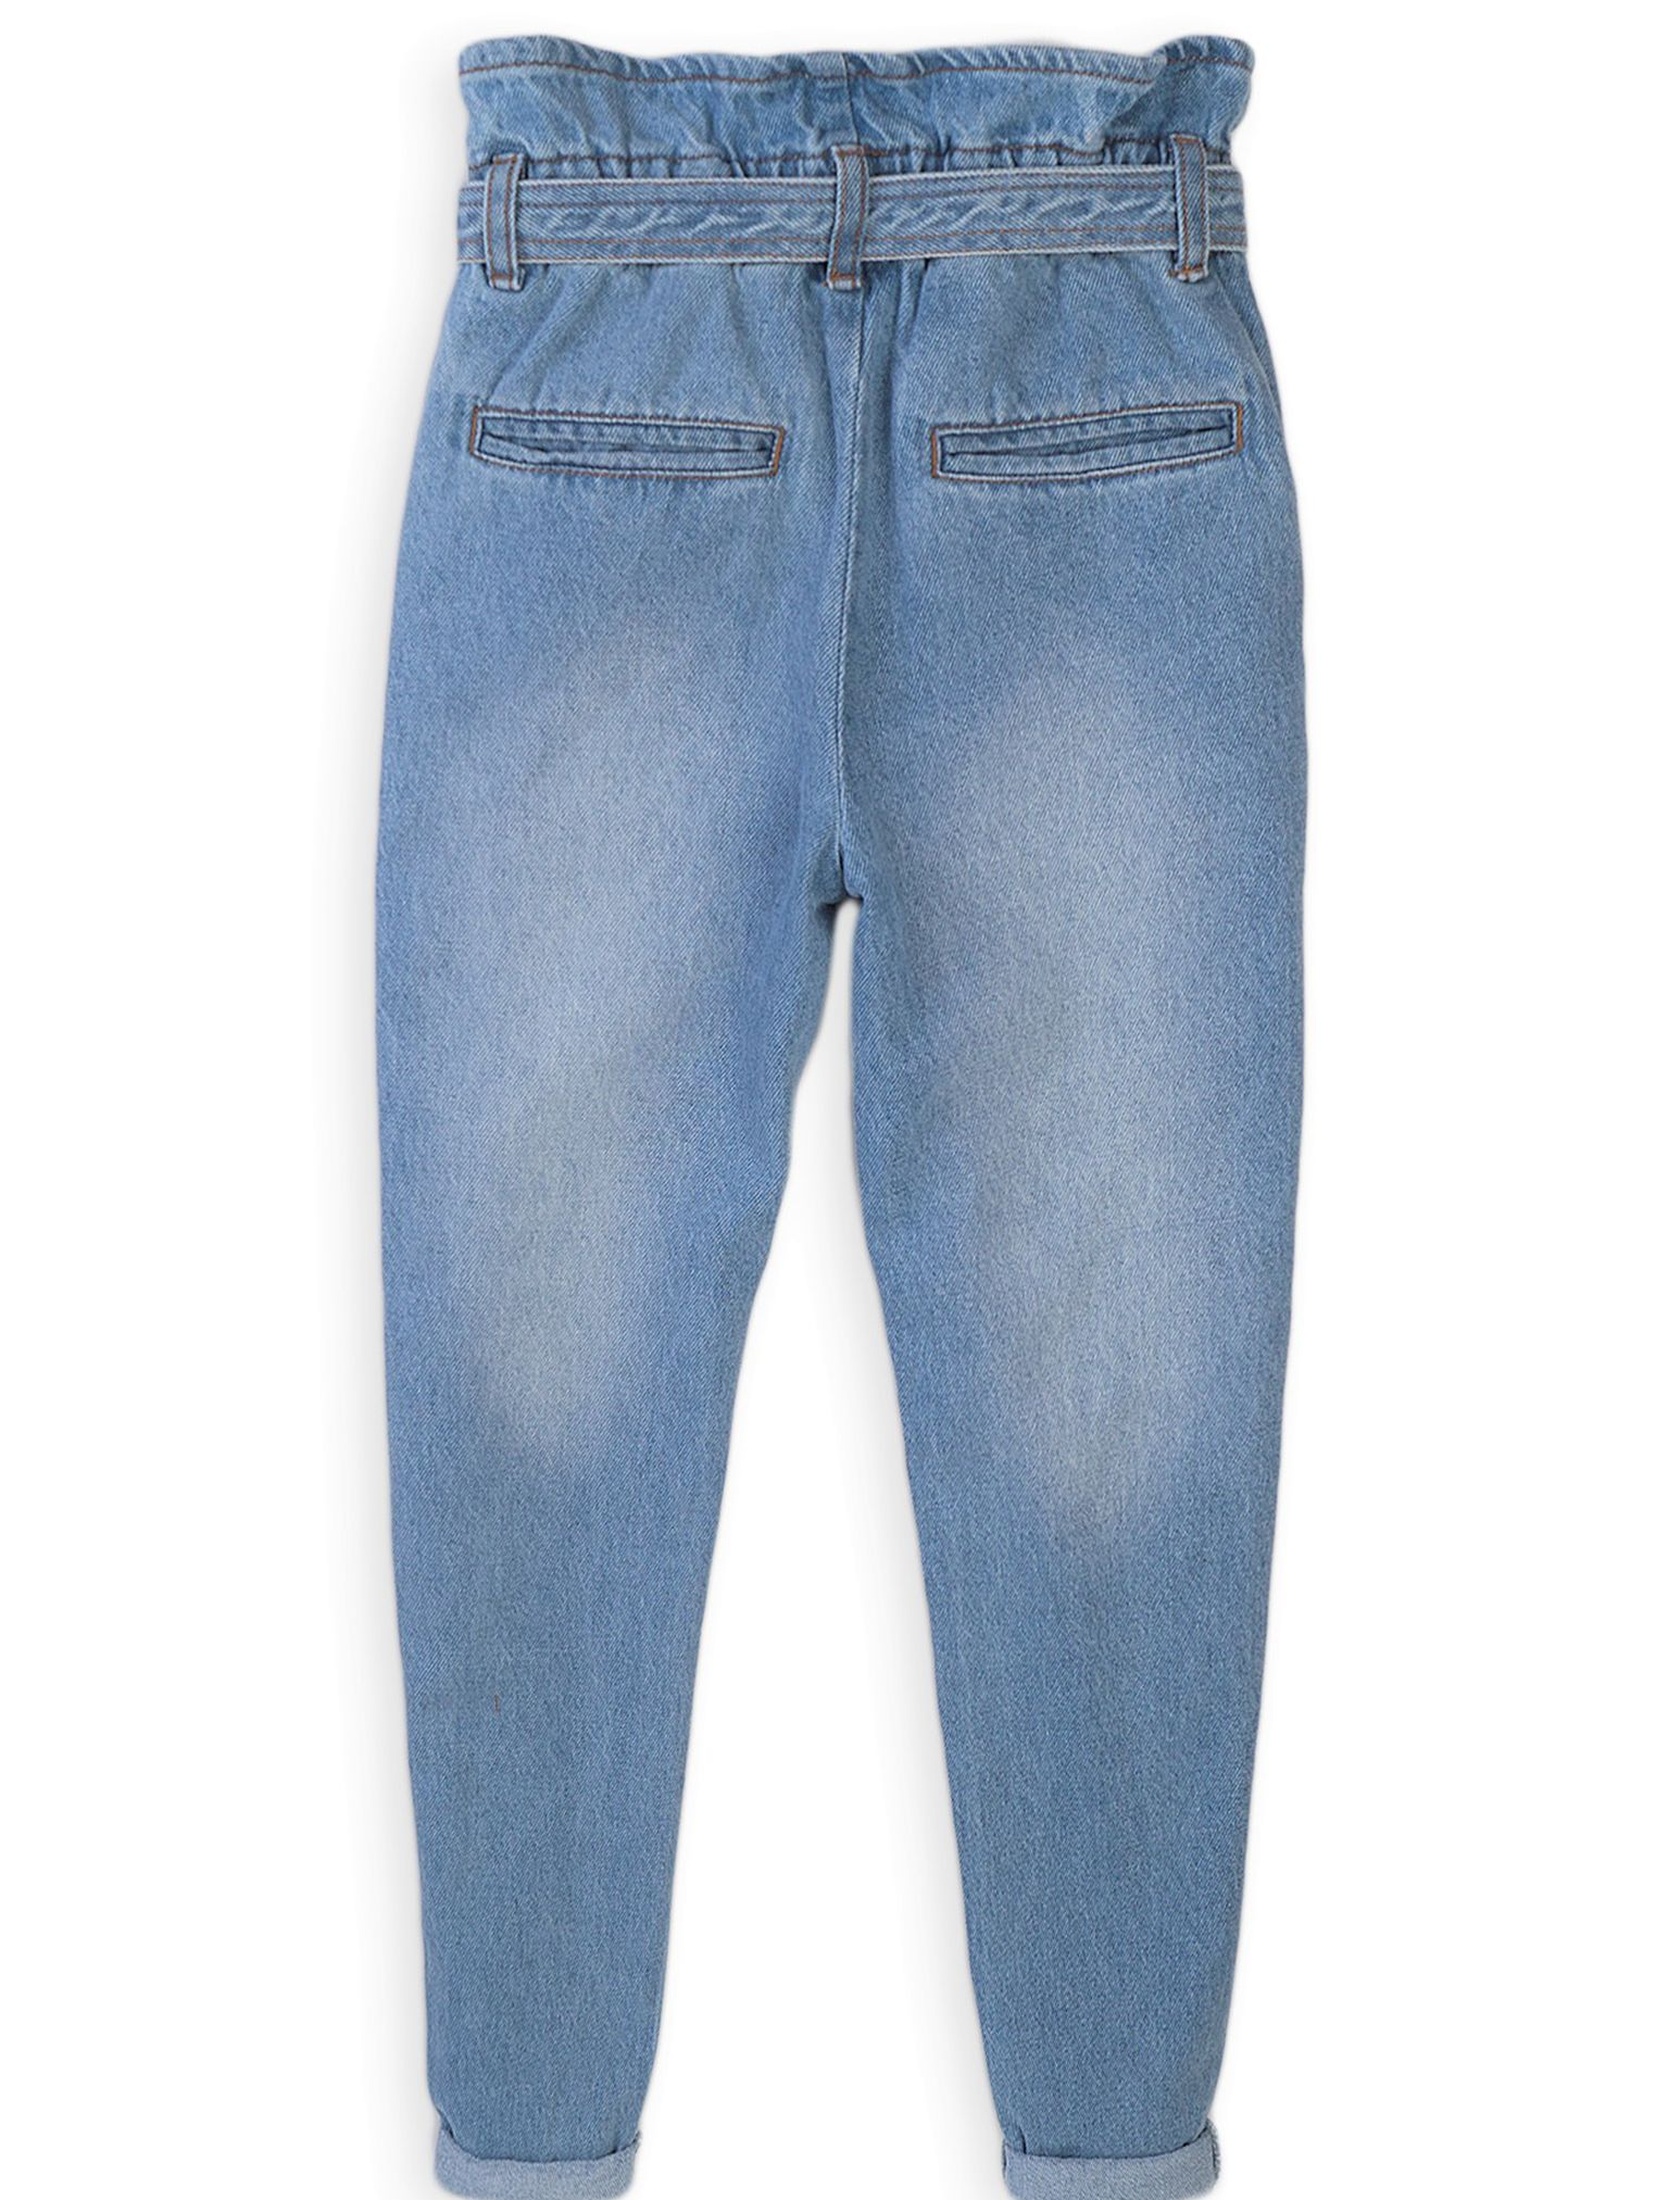 Niebieskie jeansowe spodnie z wysokim stanem